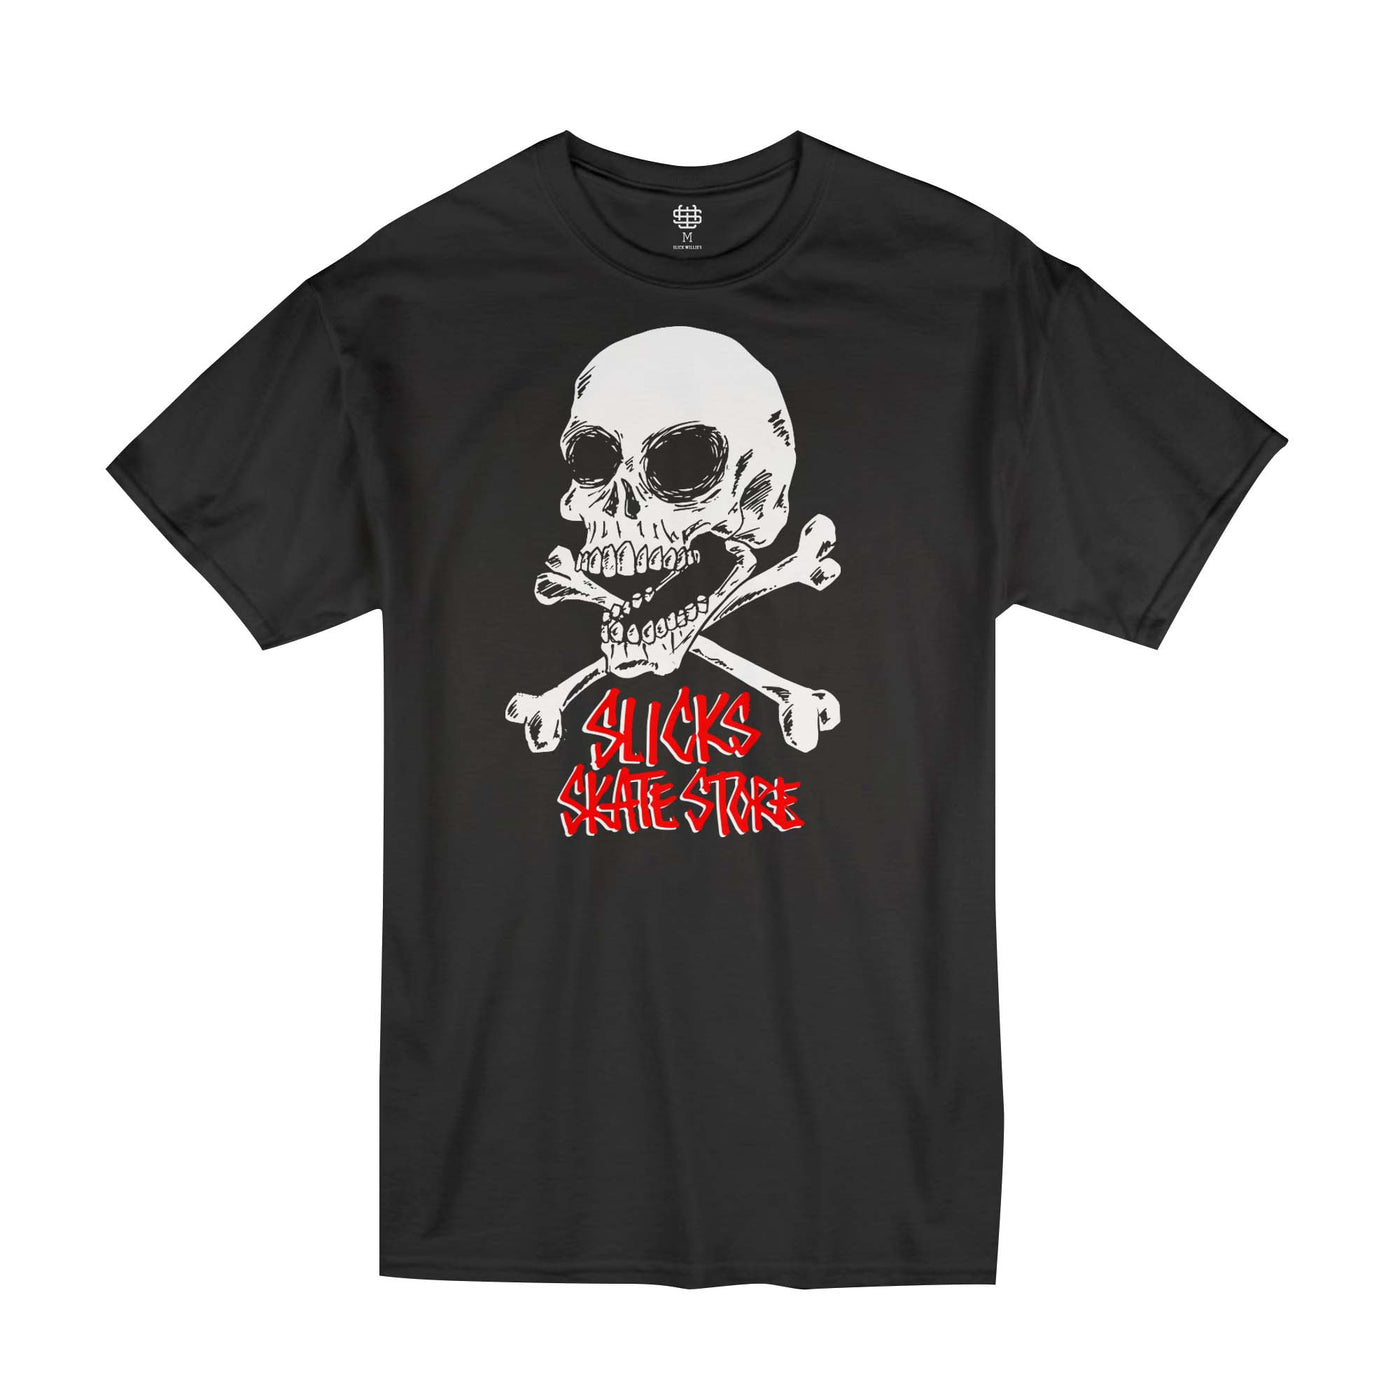 Slick's Skate Store Fos Crossbones Kids T-Shirt - Black